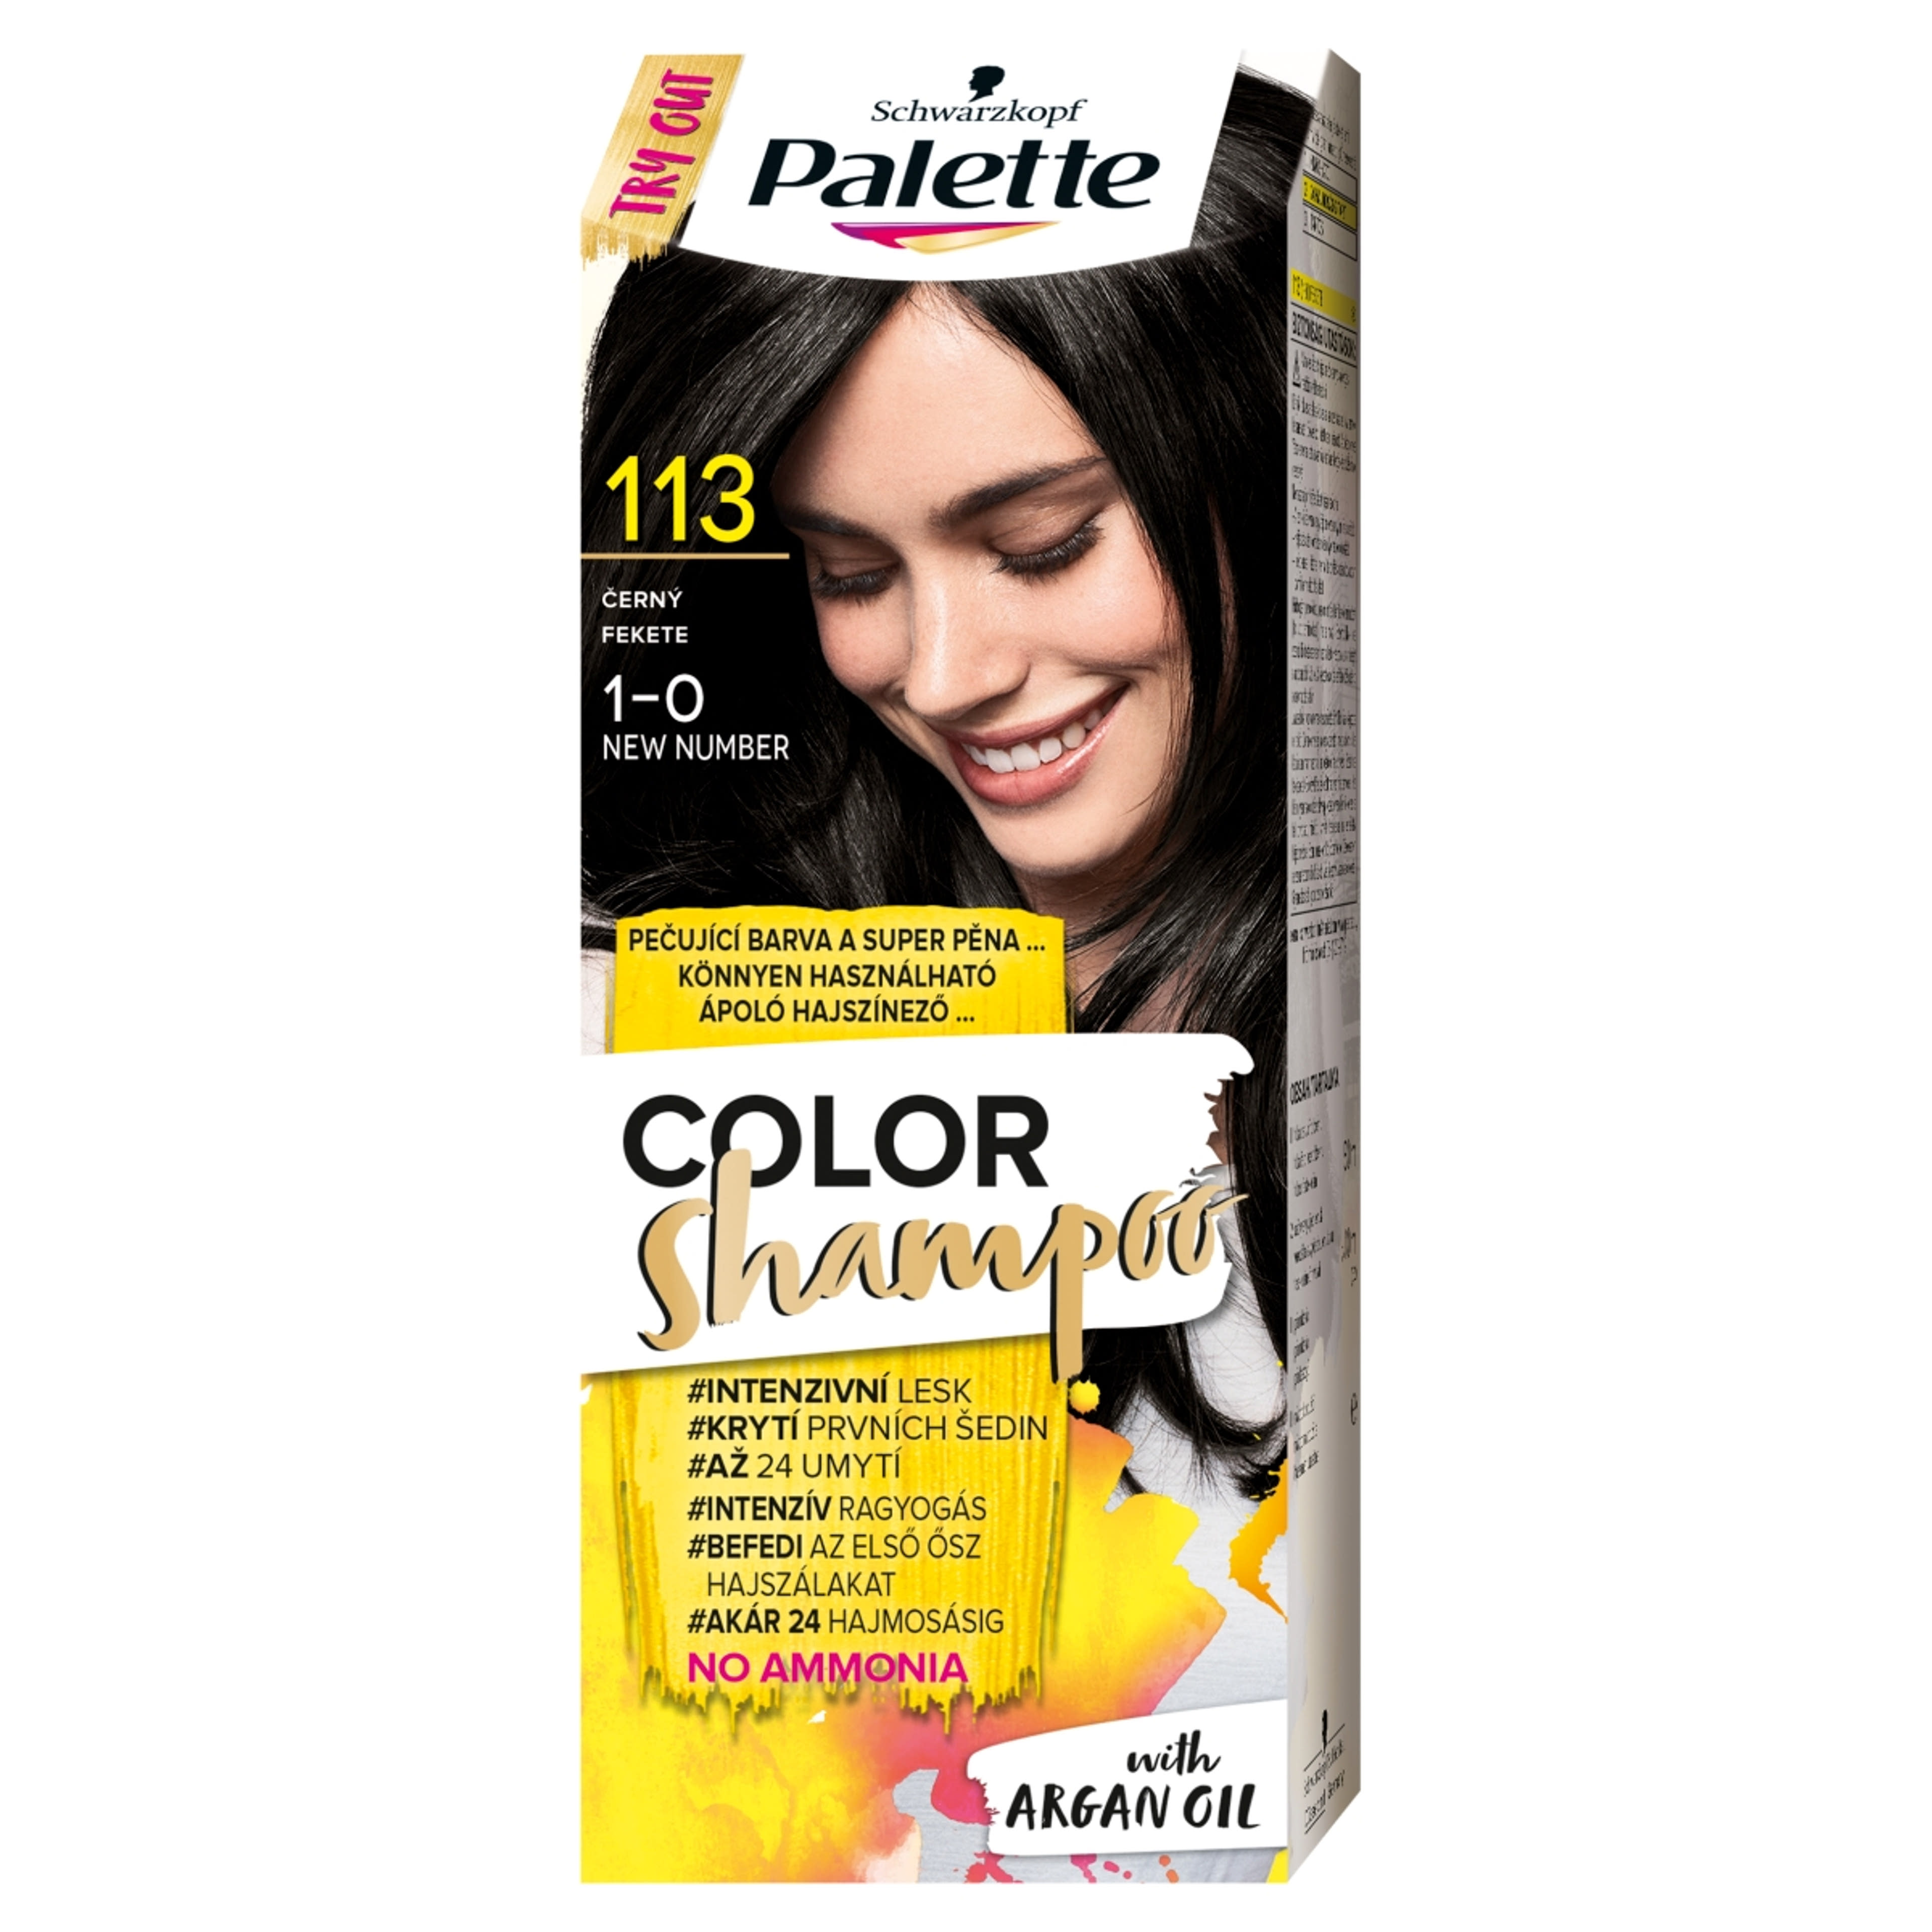 Schwarzkopf Palette Color Shampoo hajfesték 113 fekete - 1 db-1